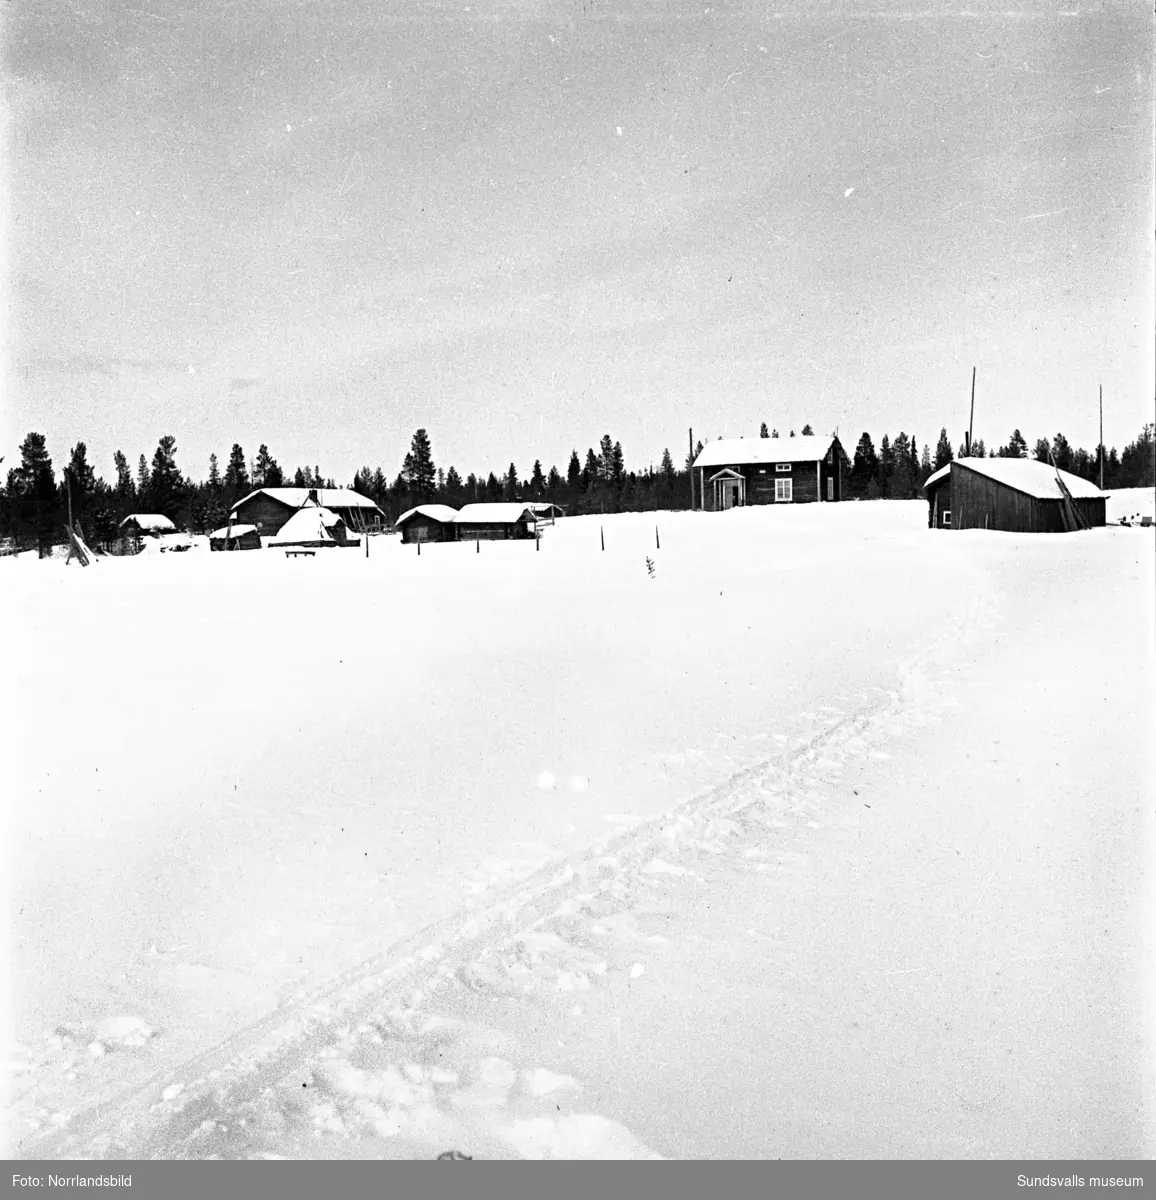 Vinterbilder från landsbygden, små stugor och uthus, barn som åker skidor, en kvinna står och handtvättar utomhus. Okänd ort.